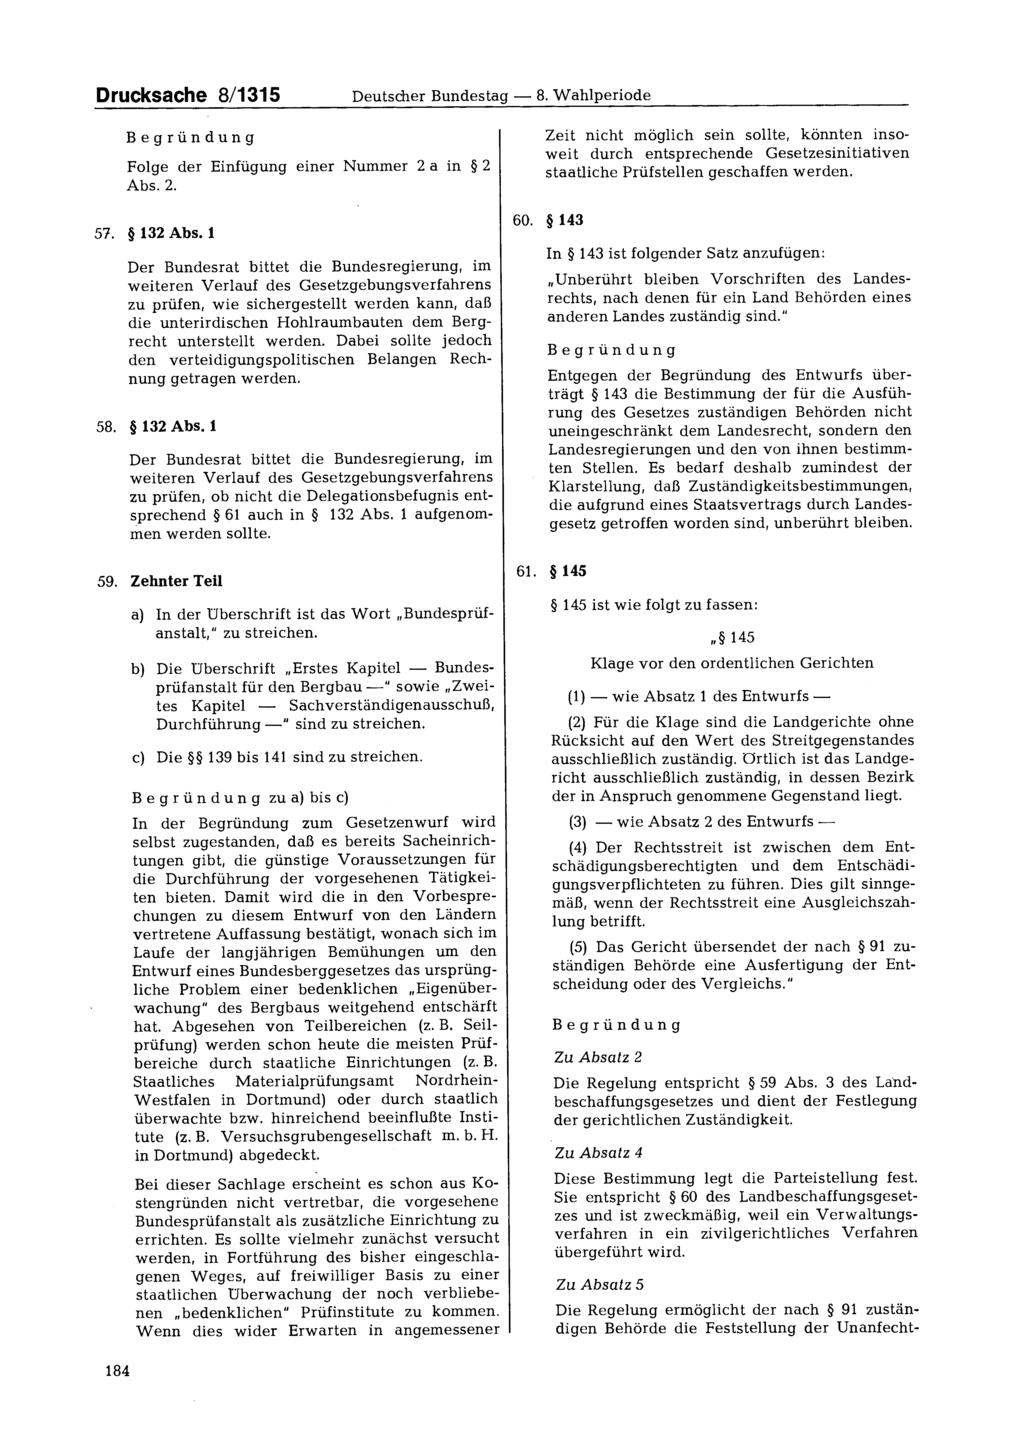 Drucksache 8/1315 Deutscher Bundestag 8. Wahlperiode Begründung Folge der Einfügung einer Nummer 2 a in 2 Abs. 2. 57. 132 Abs.